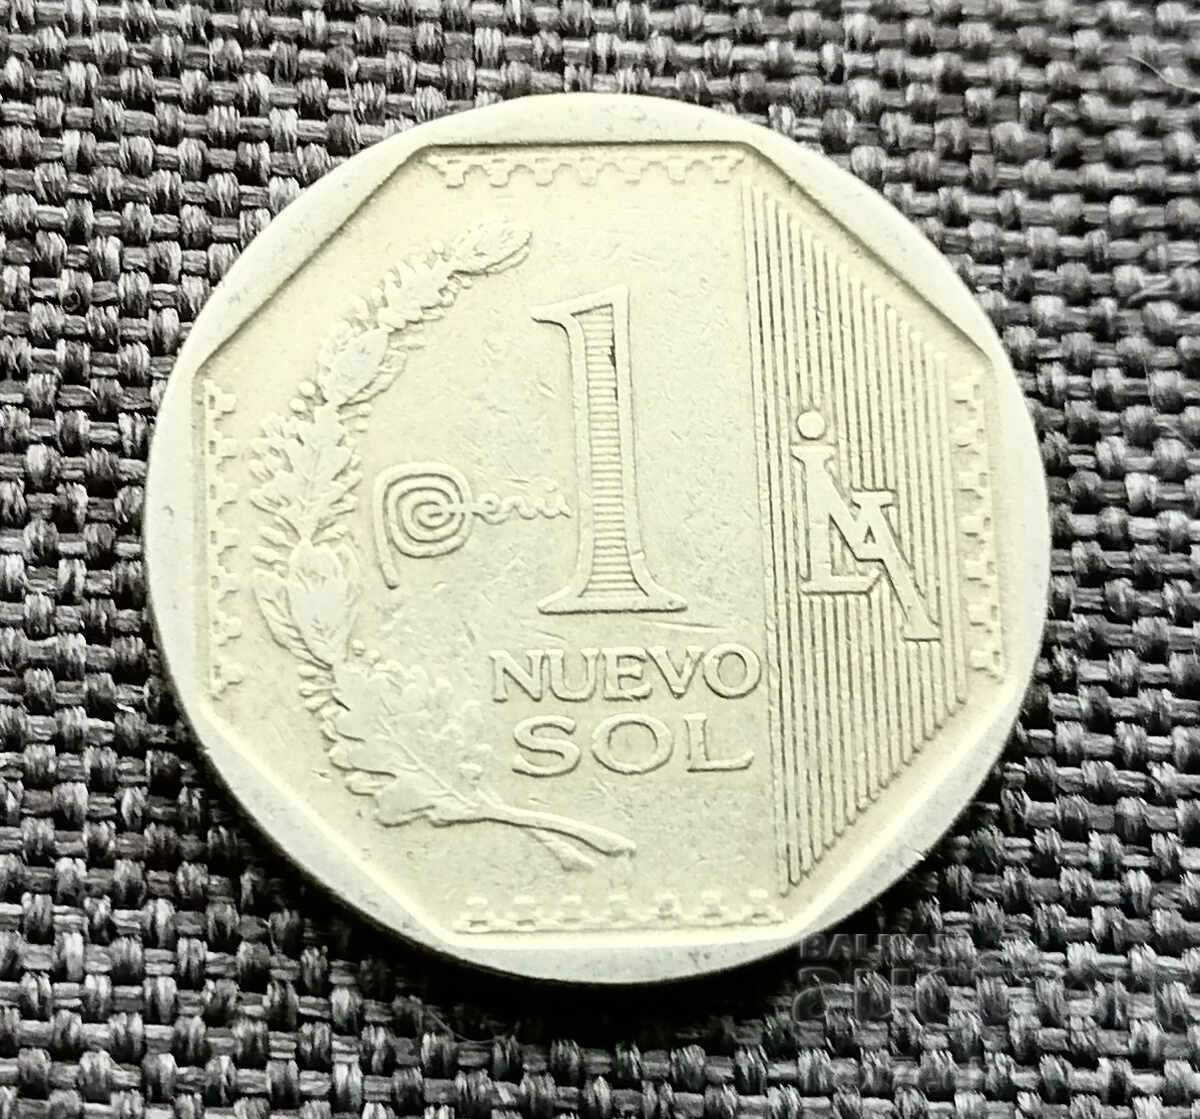 ❤️ ⭐ Monedă Peru 2014 1 sol ⭐ ❤️